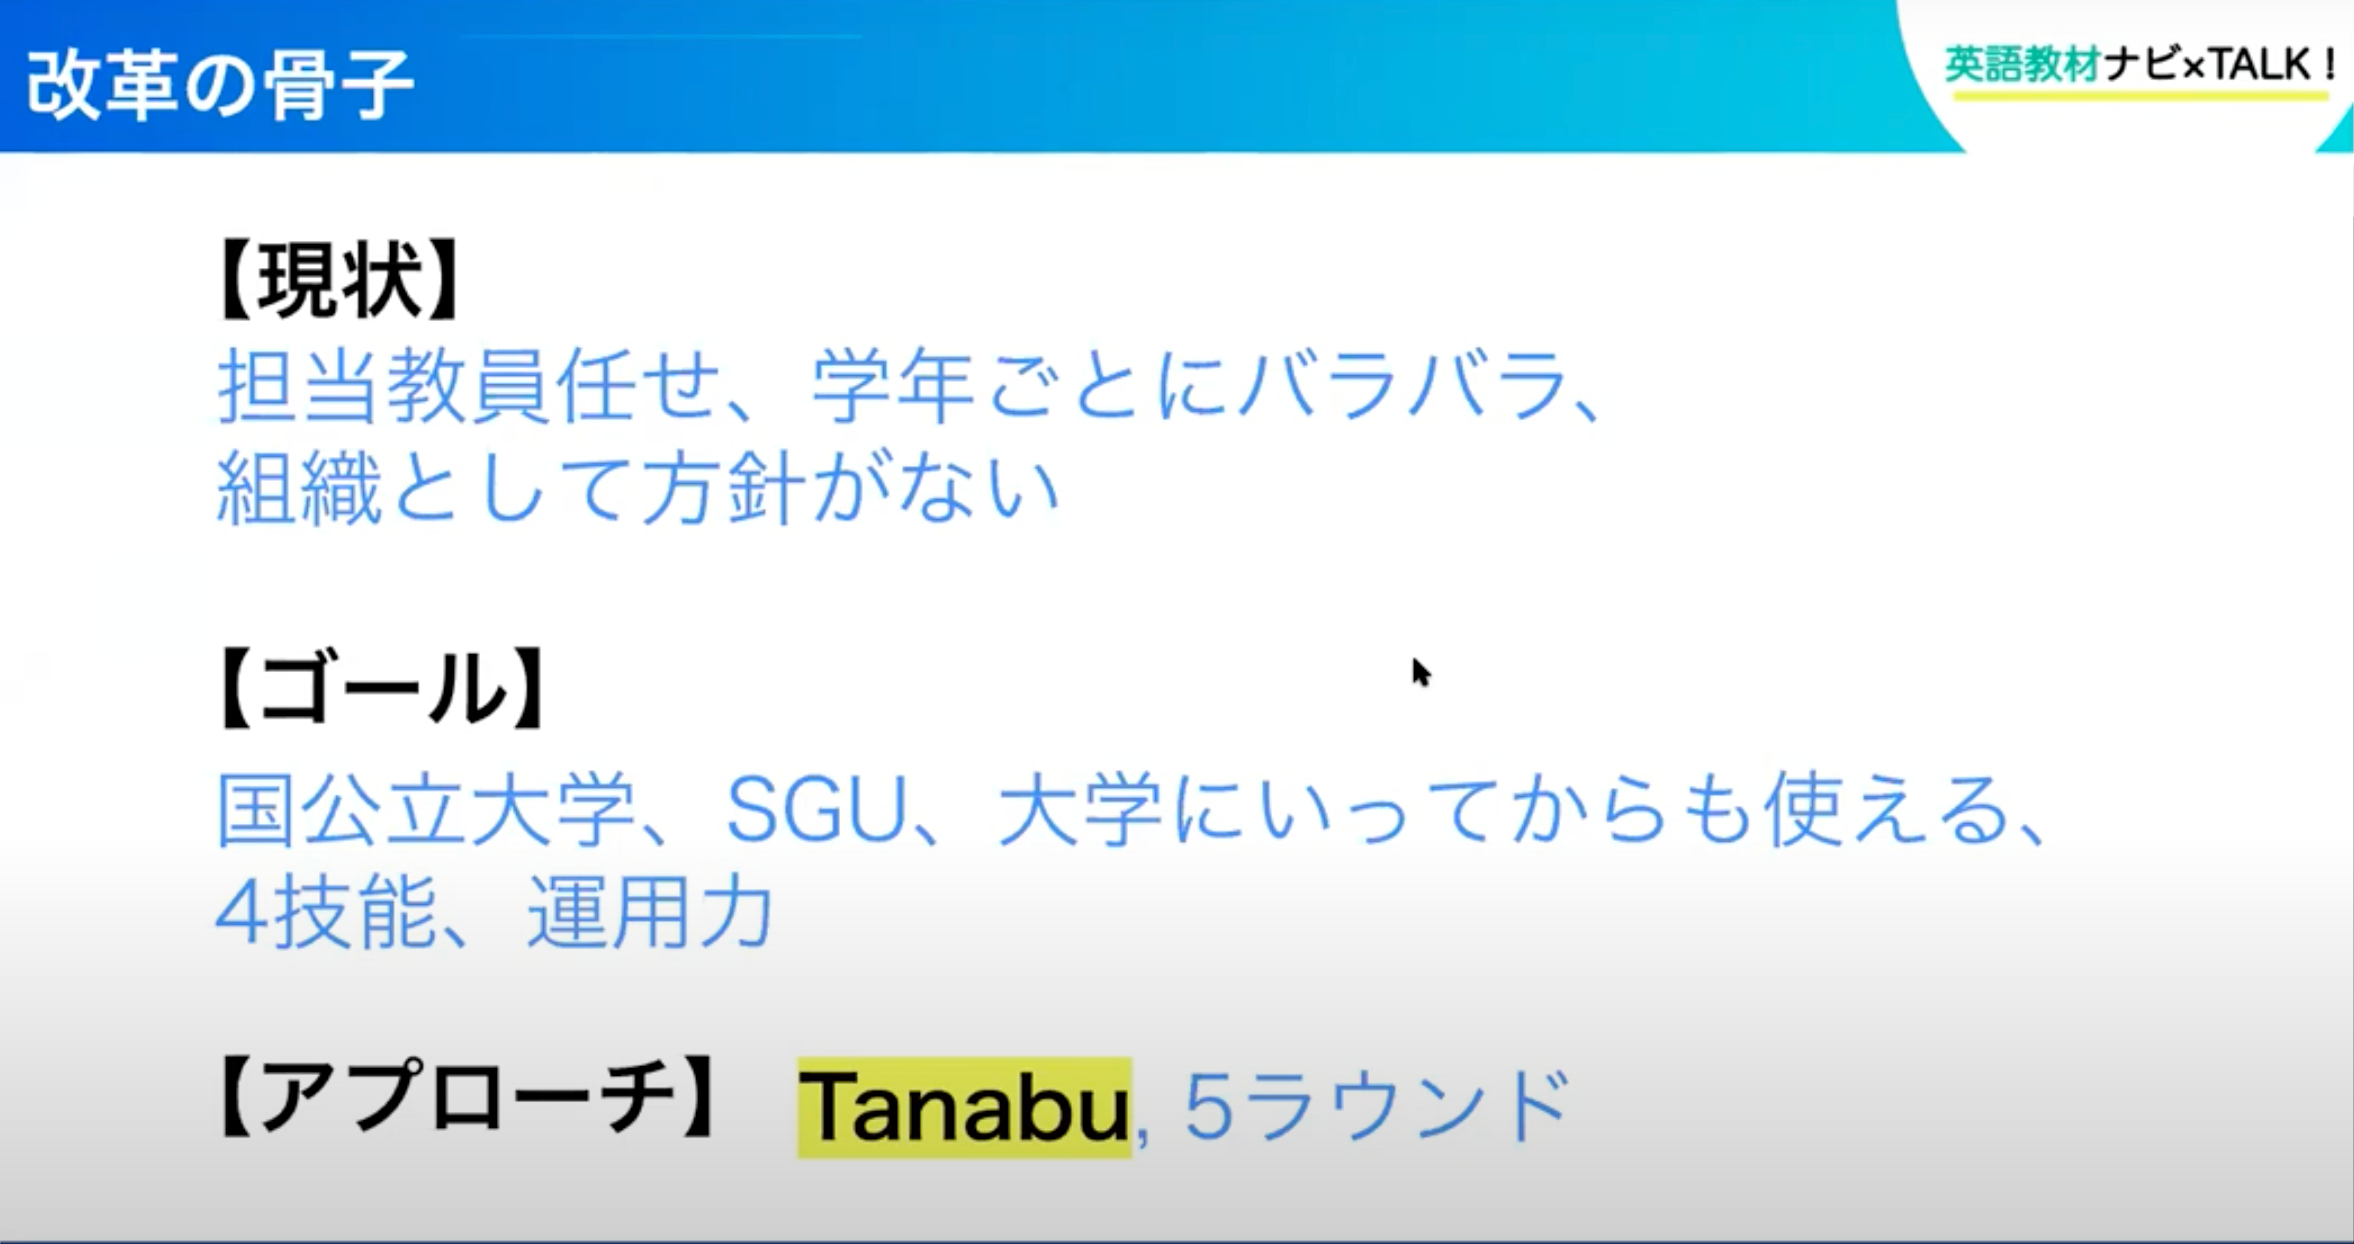 英語指導最前線 Tanabu Model 音読アプリ 実践レポート Ictが可能とした新たな音読練習指導法とは 英語教材ナビ